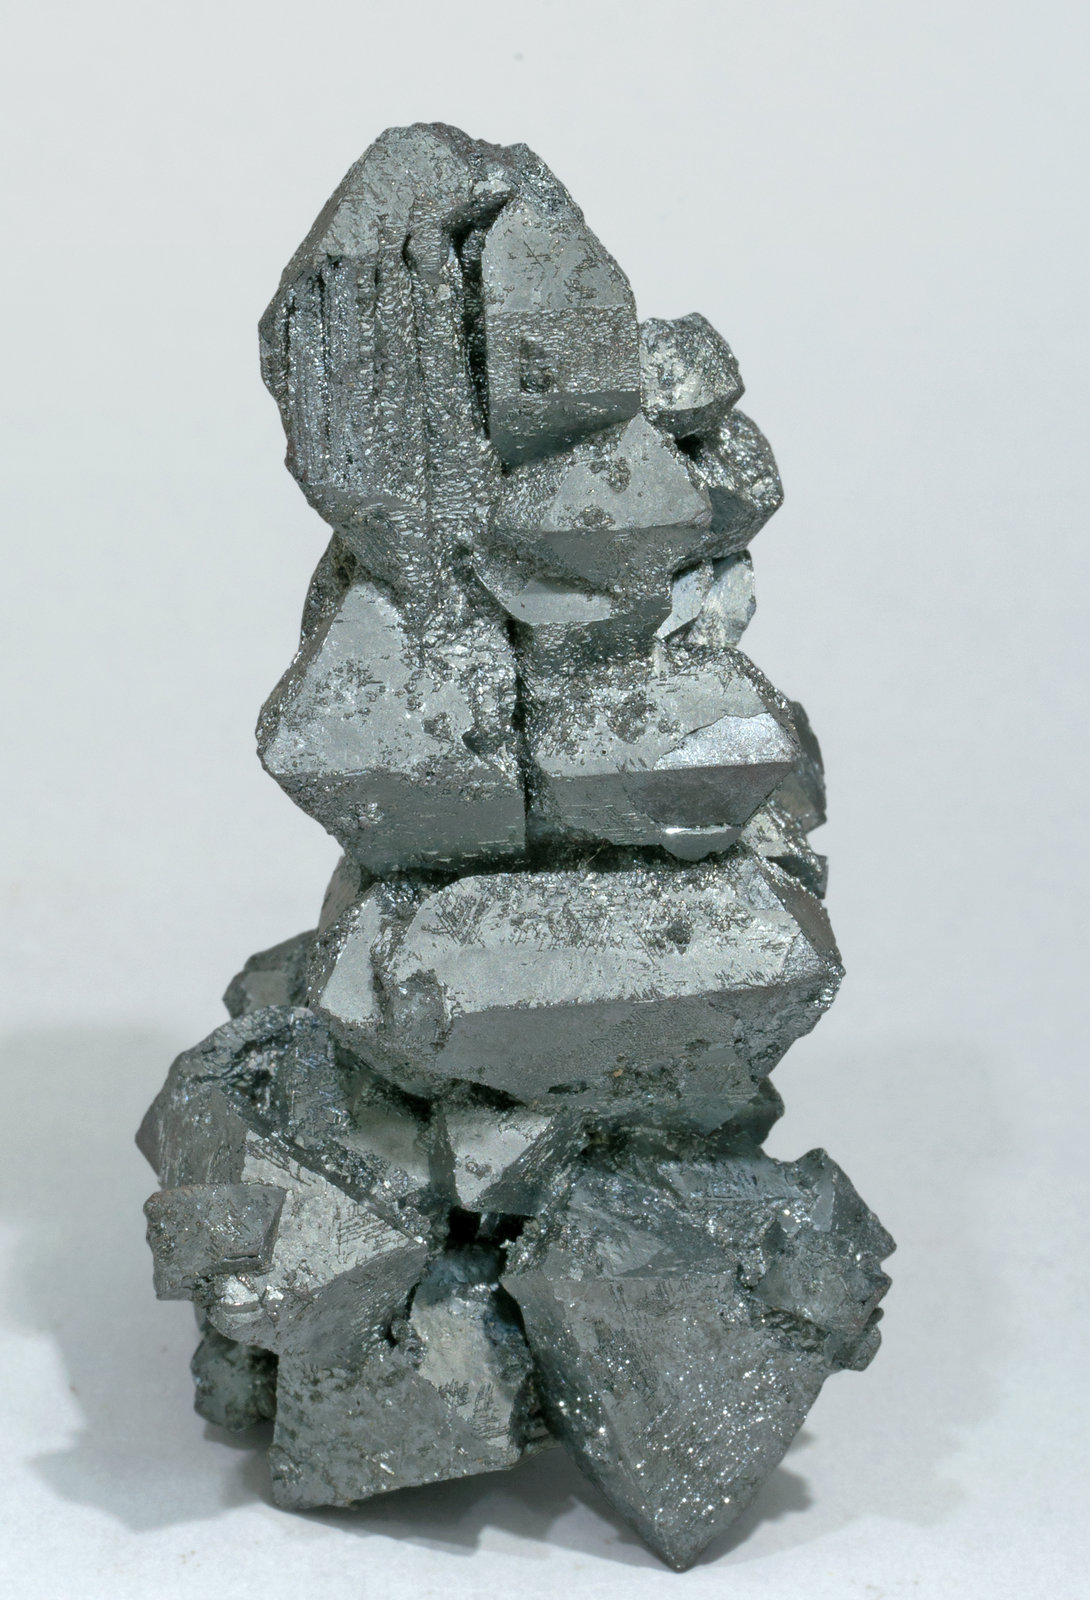 specimens/s_imagesZ1/Hematite-EJ64Z1s.jpg